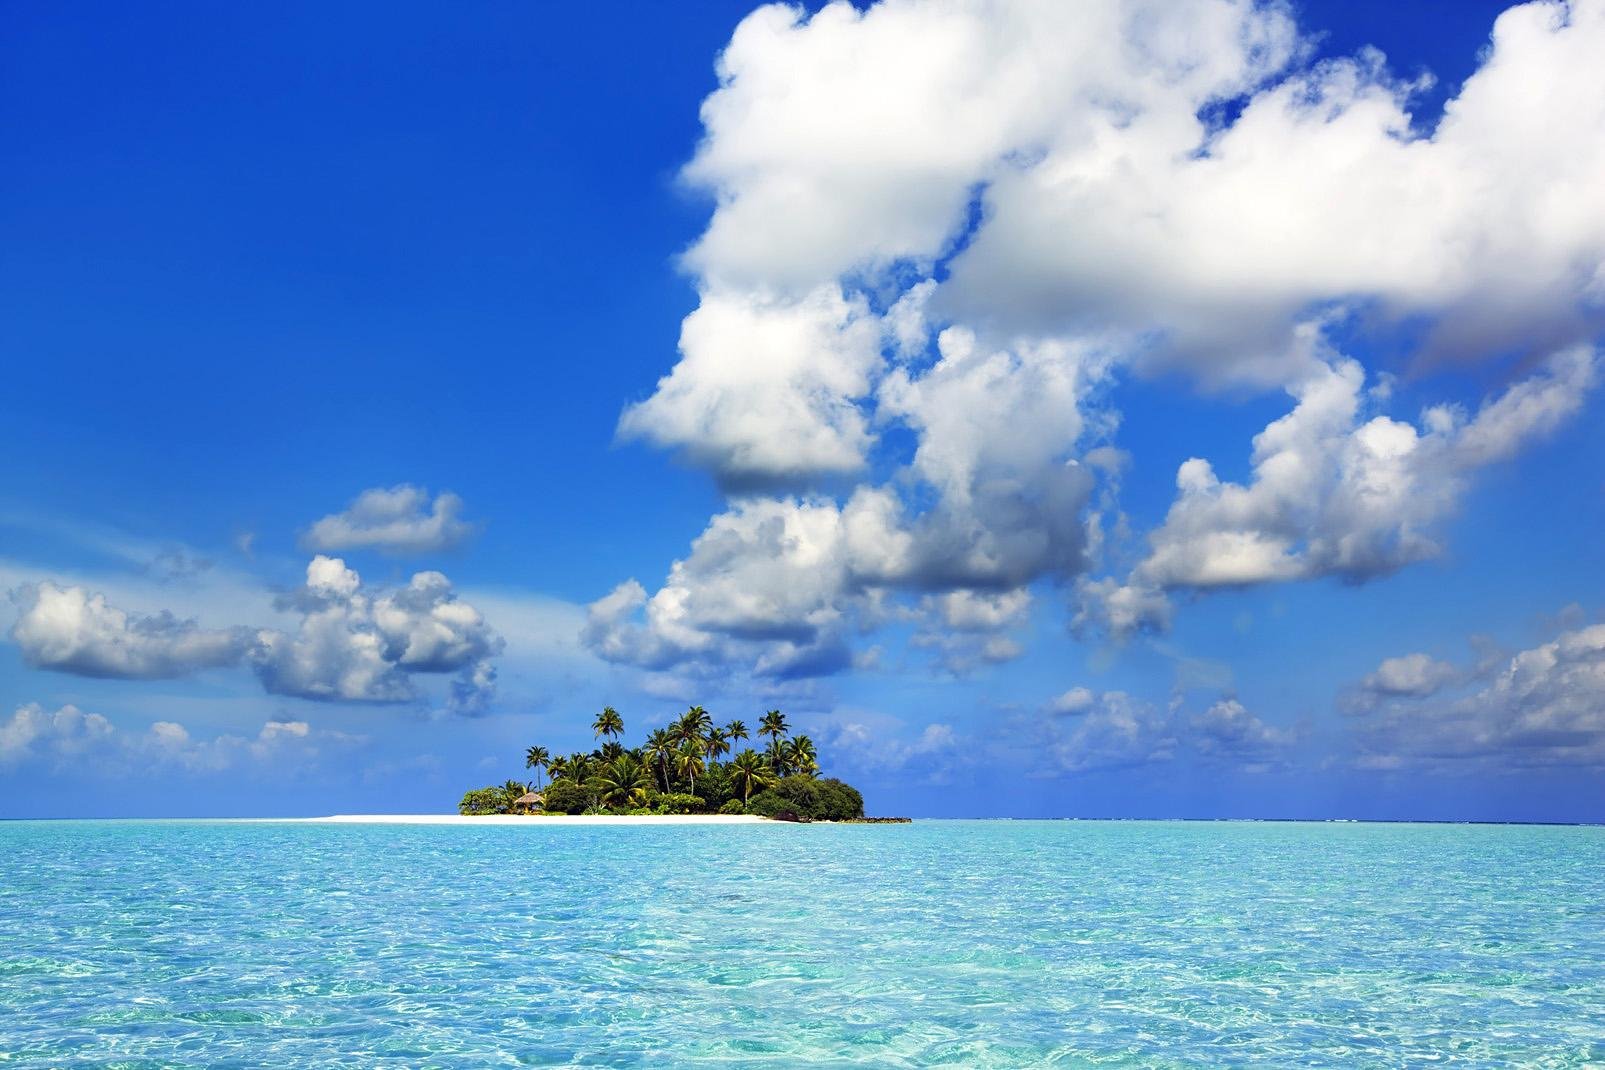 L'atoll de Baa situé au nord-ouest des Maldives, bien au dessus d'Ari Nord. Il est constitué de 15 îles-hôtels, 5 revendues sur le marché français, dont le célèbre Soneva Fushi, connu pour son luxe à la Robinson Crusoë. Nous avons également découvert le Coco Palm Dhuni Kolhu, très sympathique. 
Nous vous invitons au rêve en lisant nos fiches, et peut-être qui sait... à la réalité ! Tous les ingrédients ...